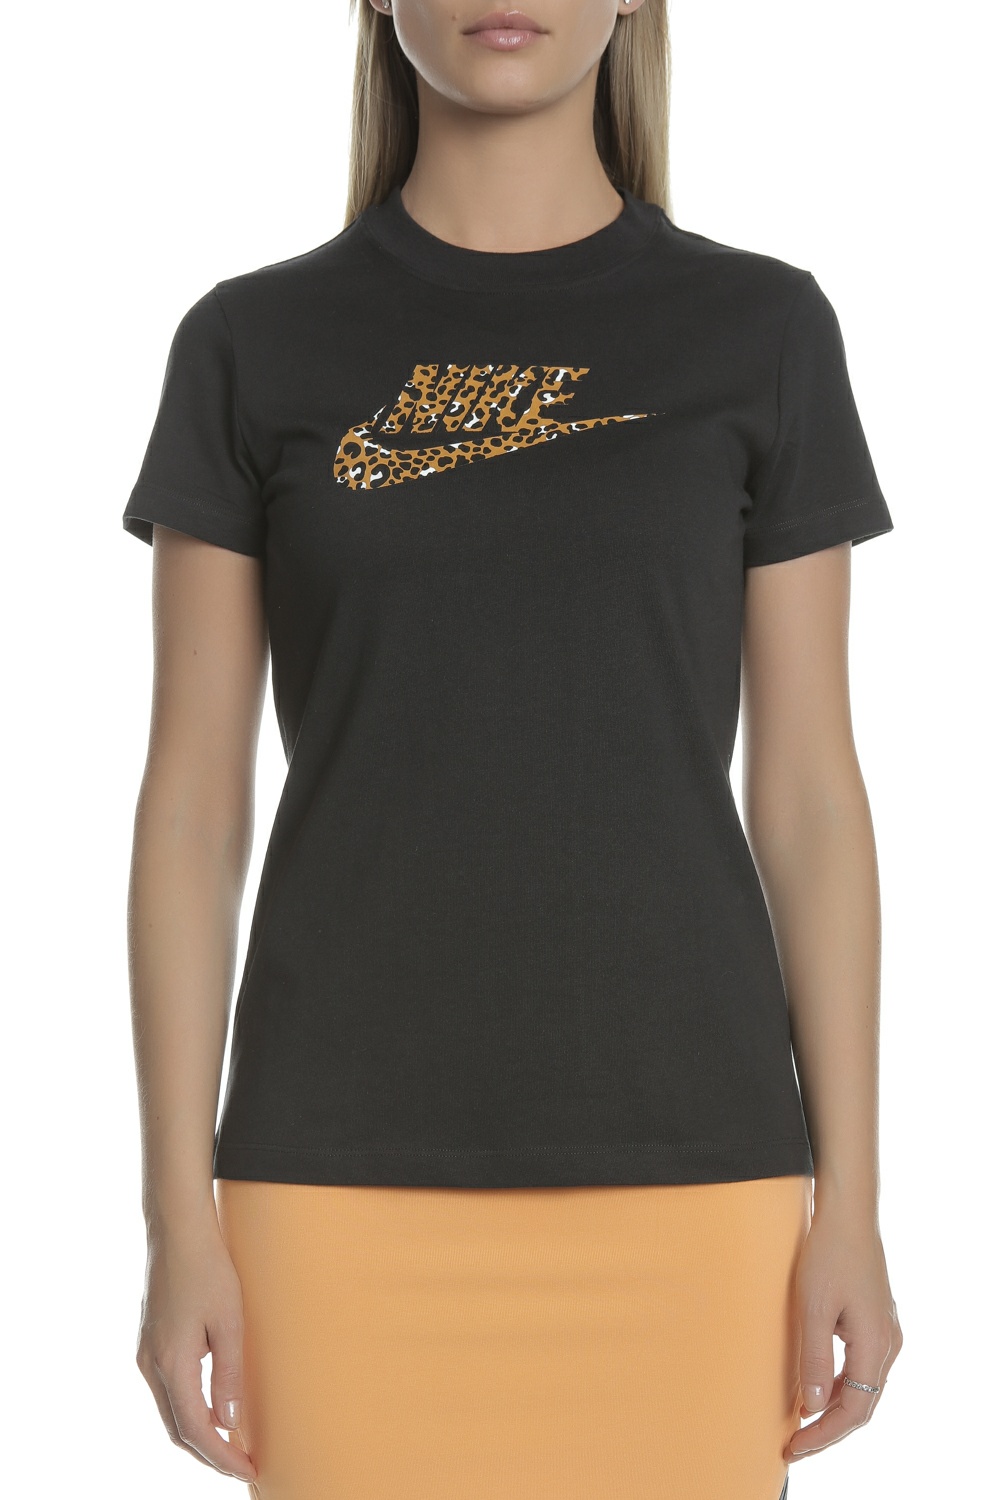 Γυναικεία/Ρούχα/Αθλητικά/T-shirt-Τοπ NIKE - Γυναικείο t-shirt NIKE NSW μαύρο